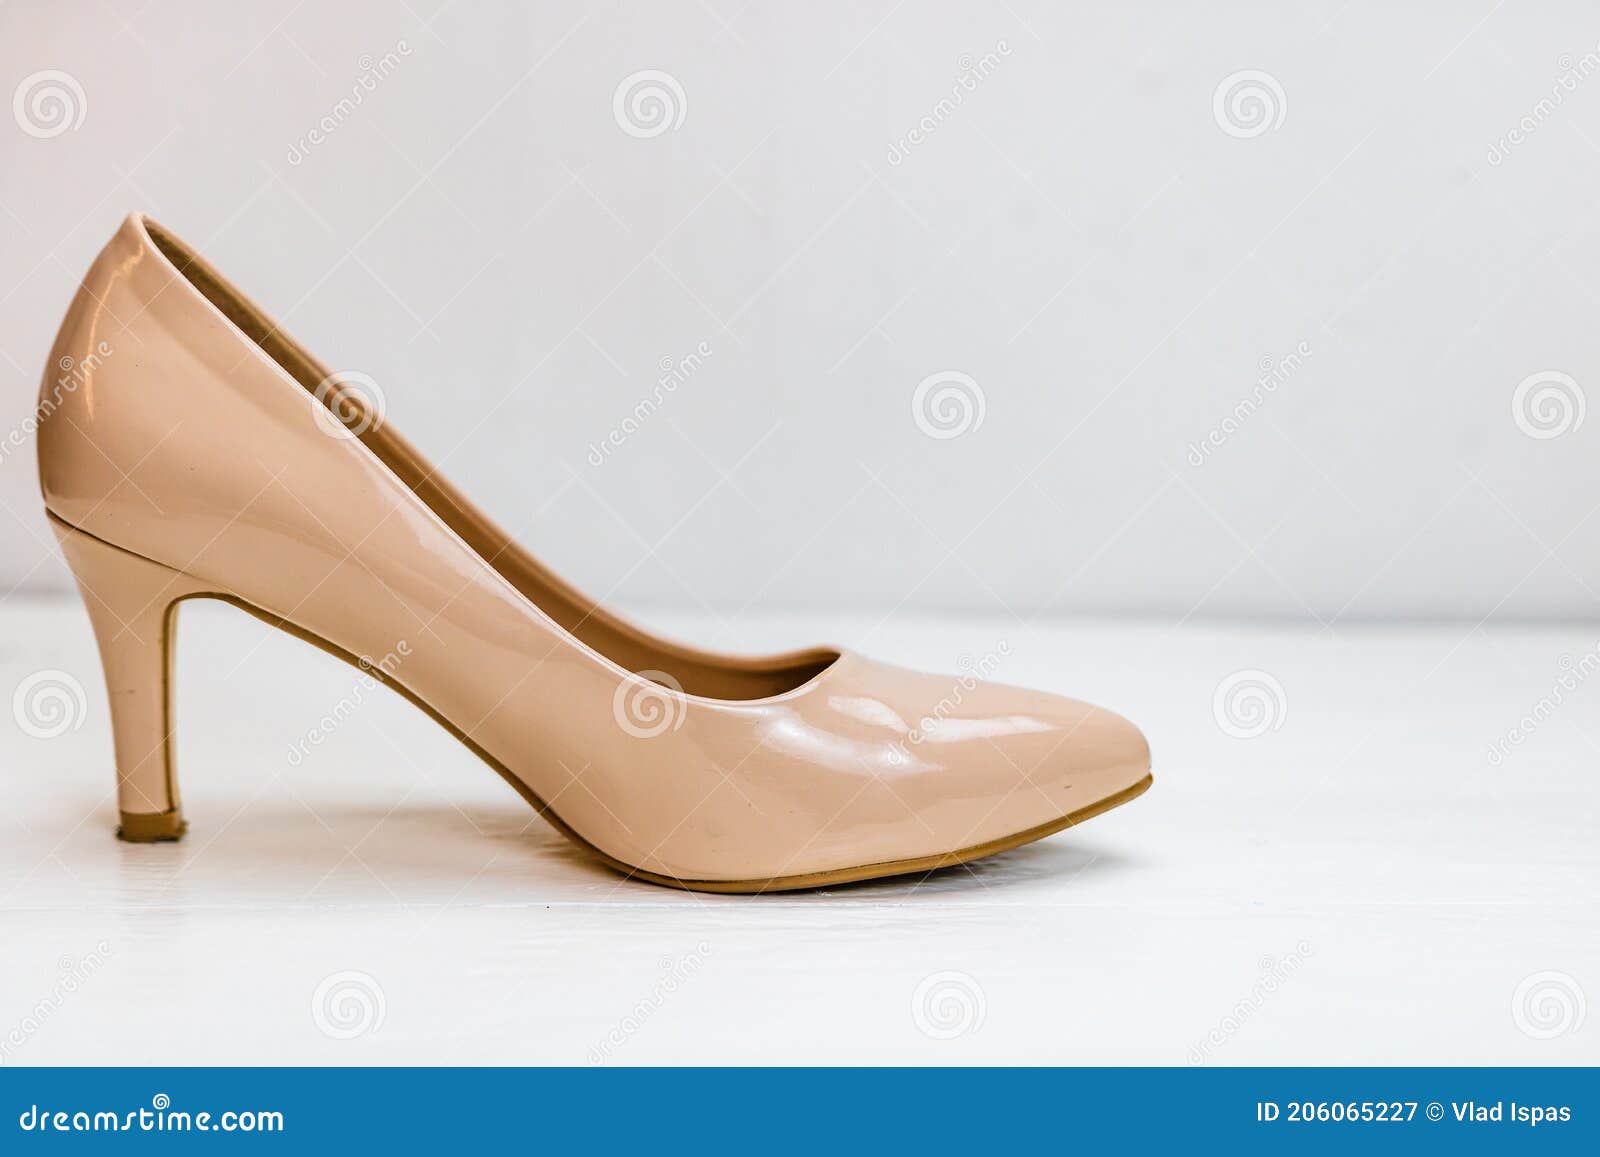 Zapatos De Tacones Altos De Color Beige Aislados En Fondo Blanco Con Espacio Para Copiar de archivo - Imagen de cuidado, cuero: 206065227